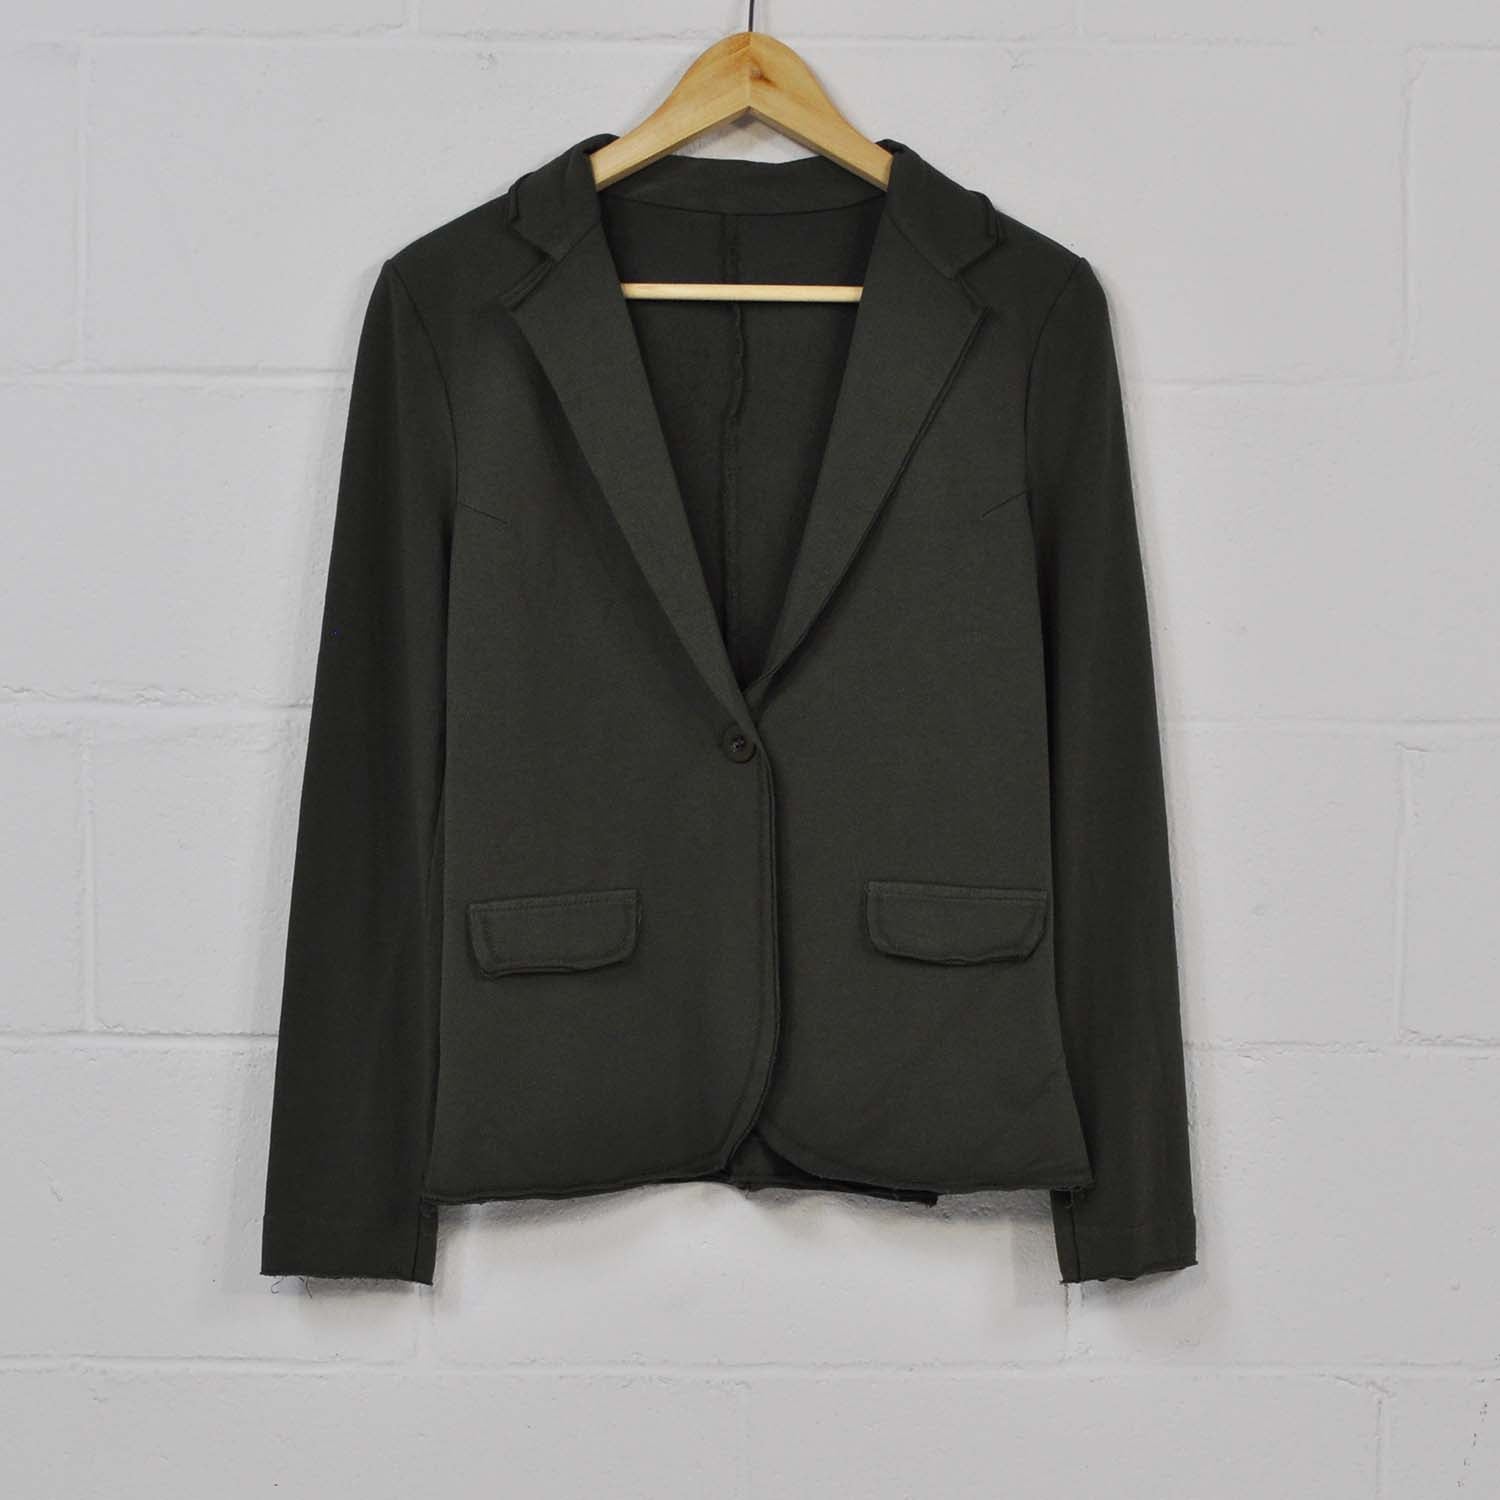 Green cotton suit jacket